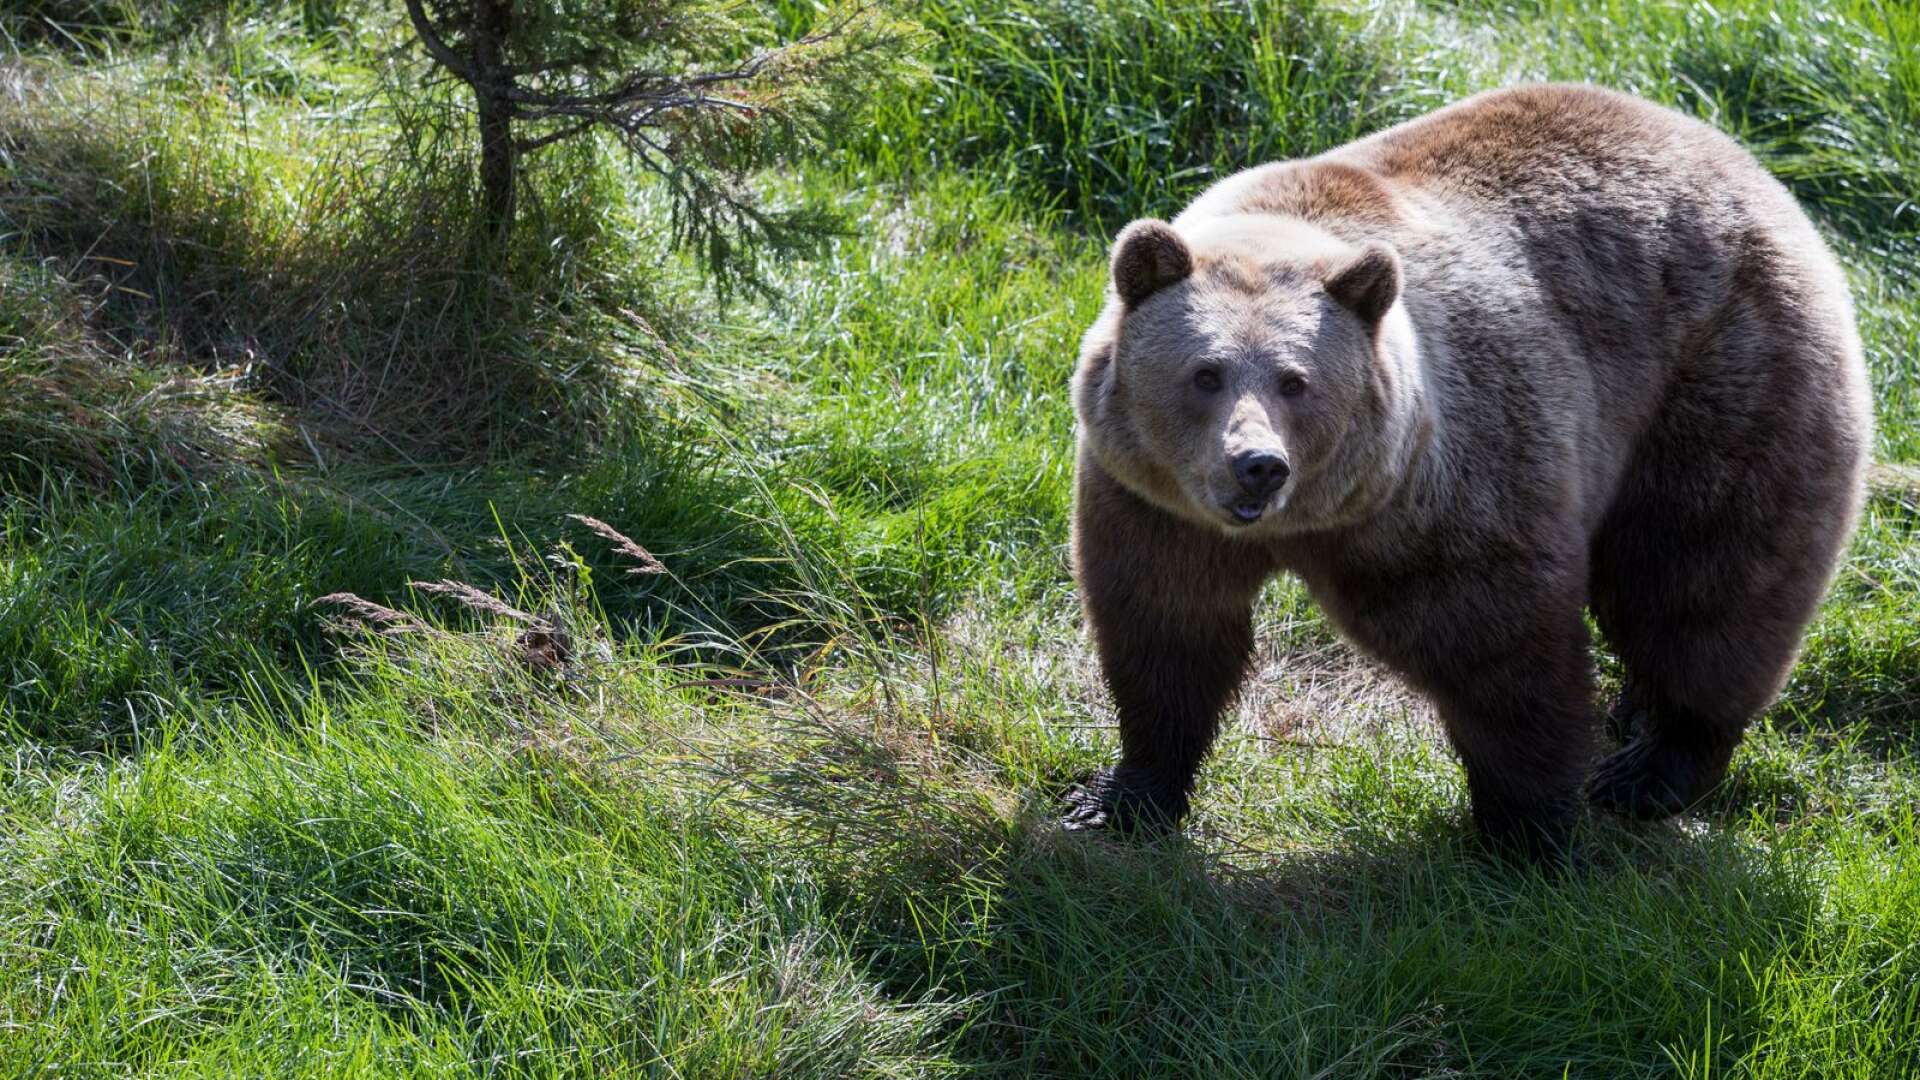 Tilldelningen var tre björnar, men eftersom en hona fälldes tidigt på måndagsmorgonen är licensjakten nu avlyst i Värmland för i år. (Björnen på bilden är fotograferad i annat sammanhang.)